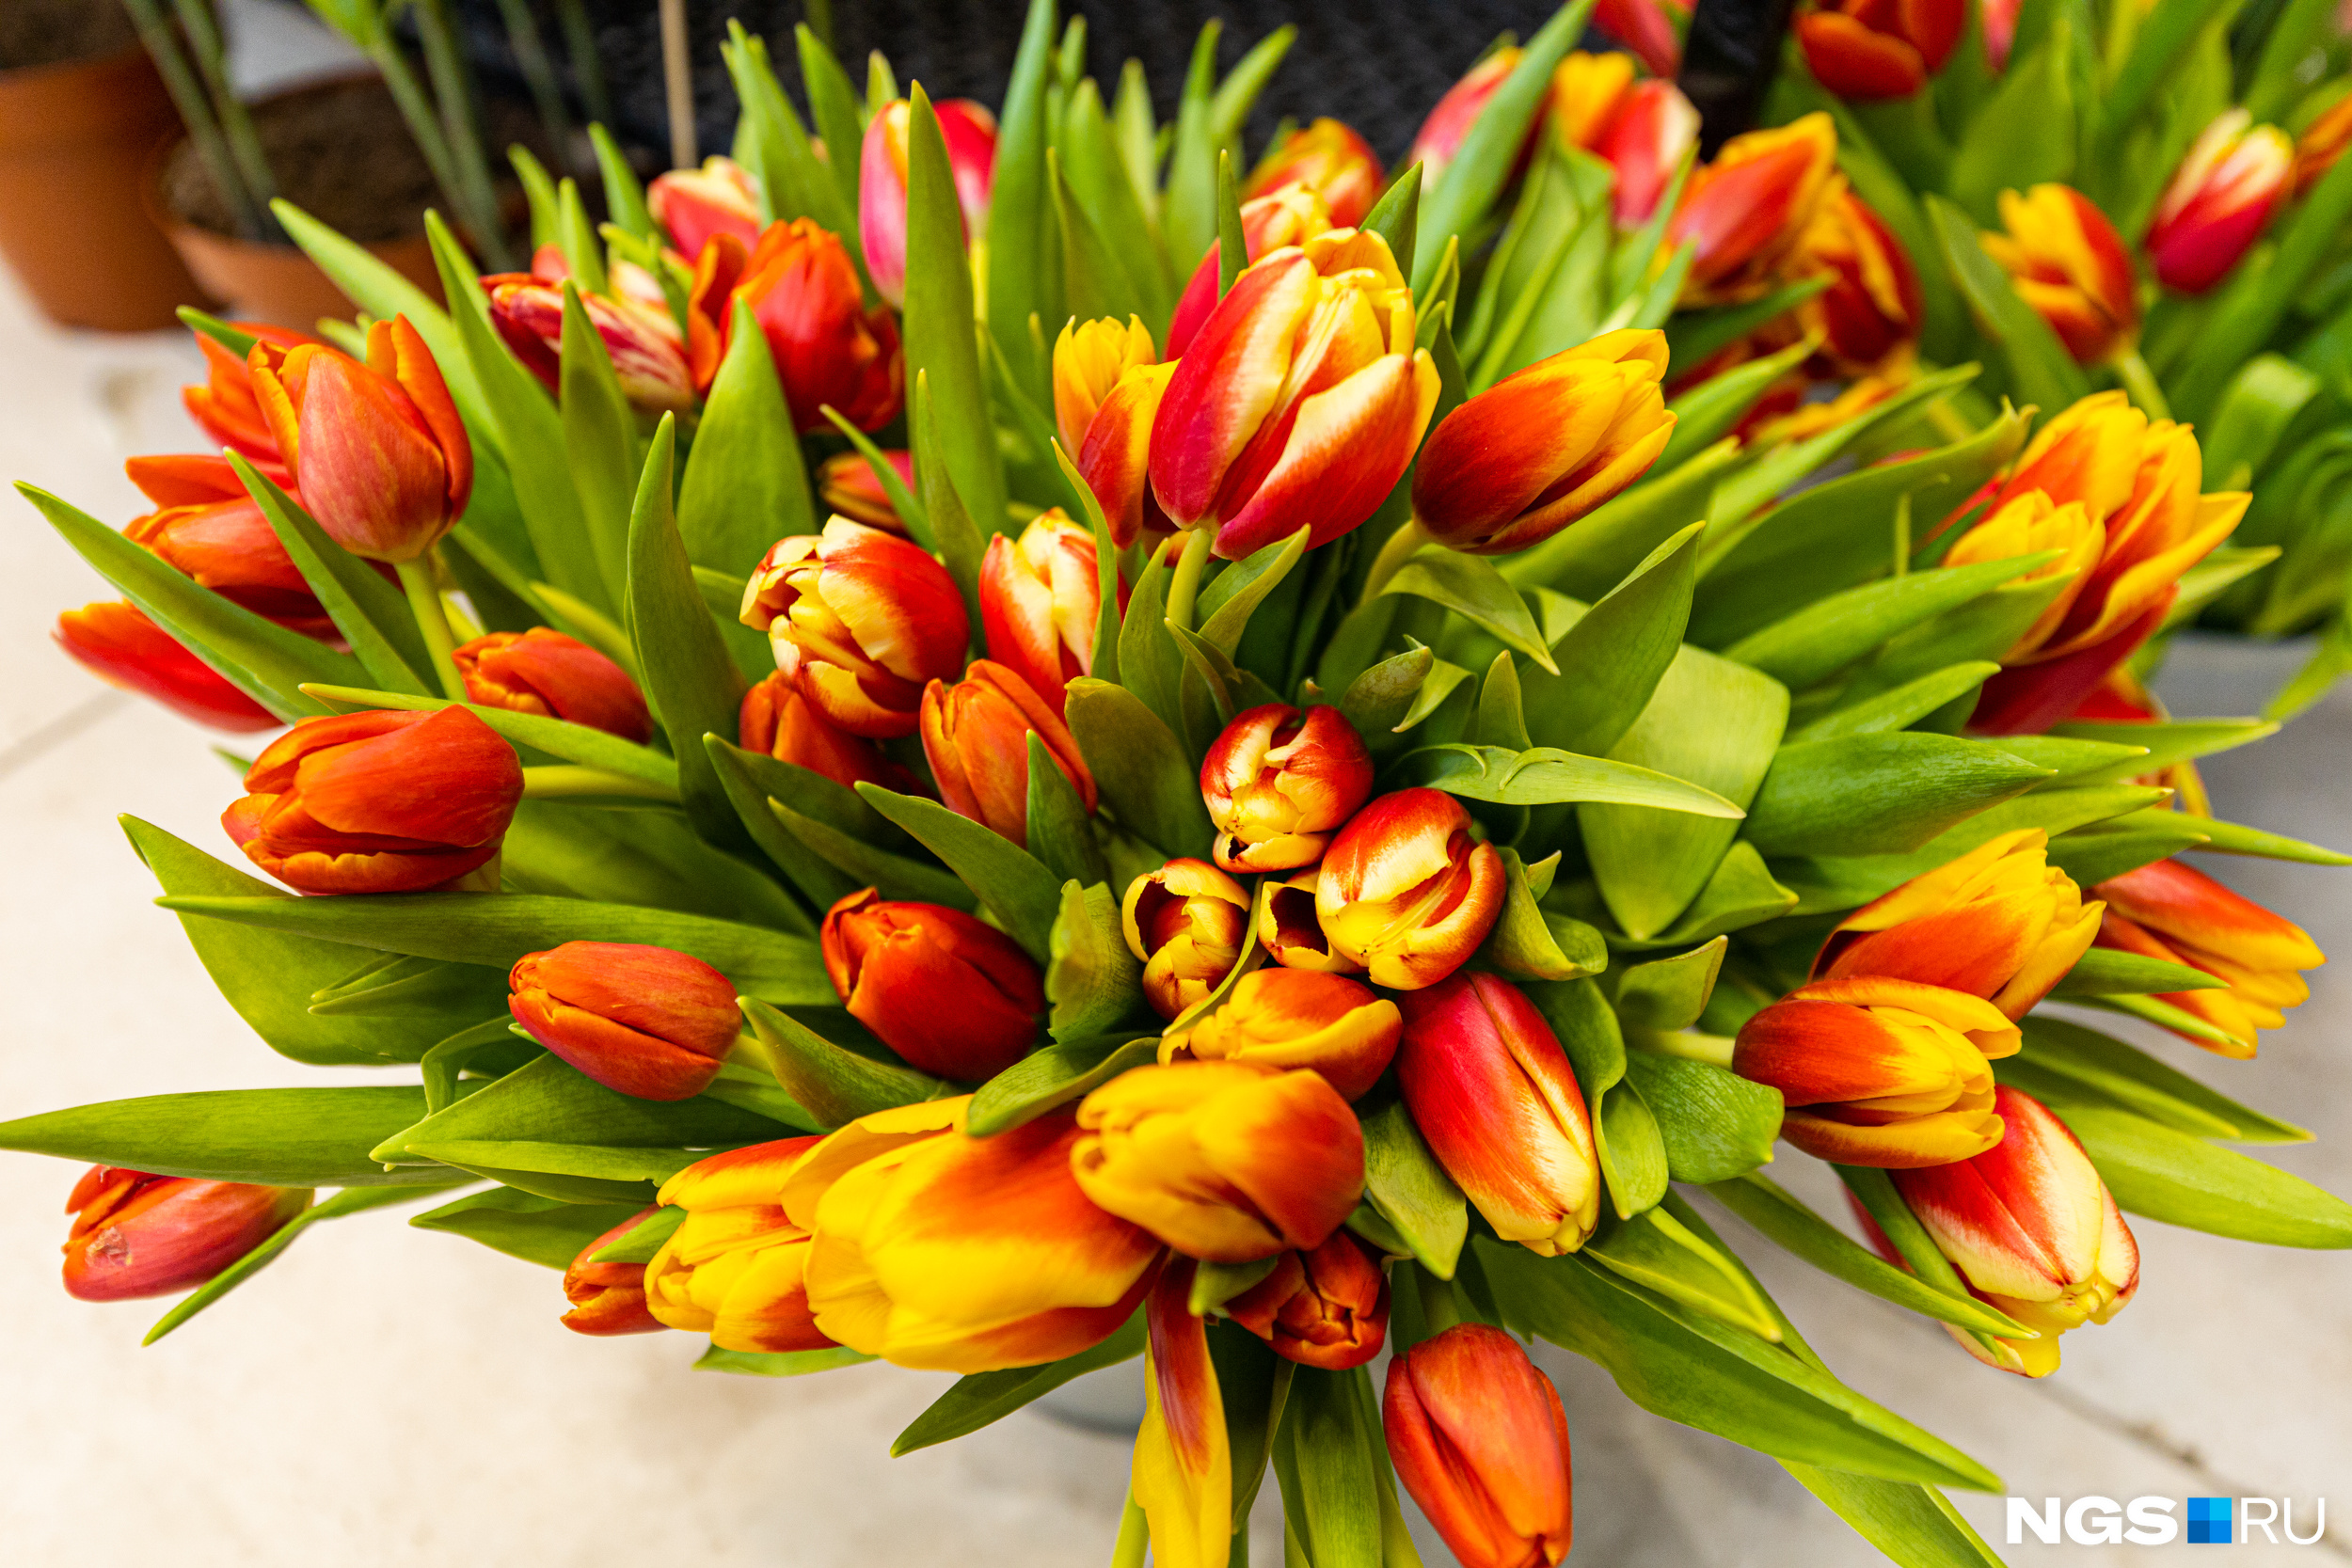 Продавцы делают ставки на тюльпаны — символ сибирской весны